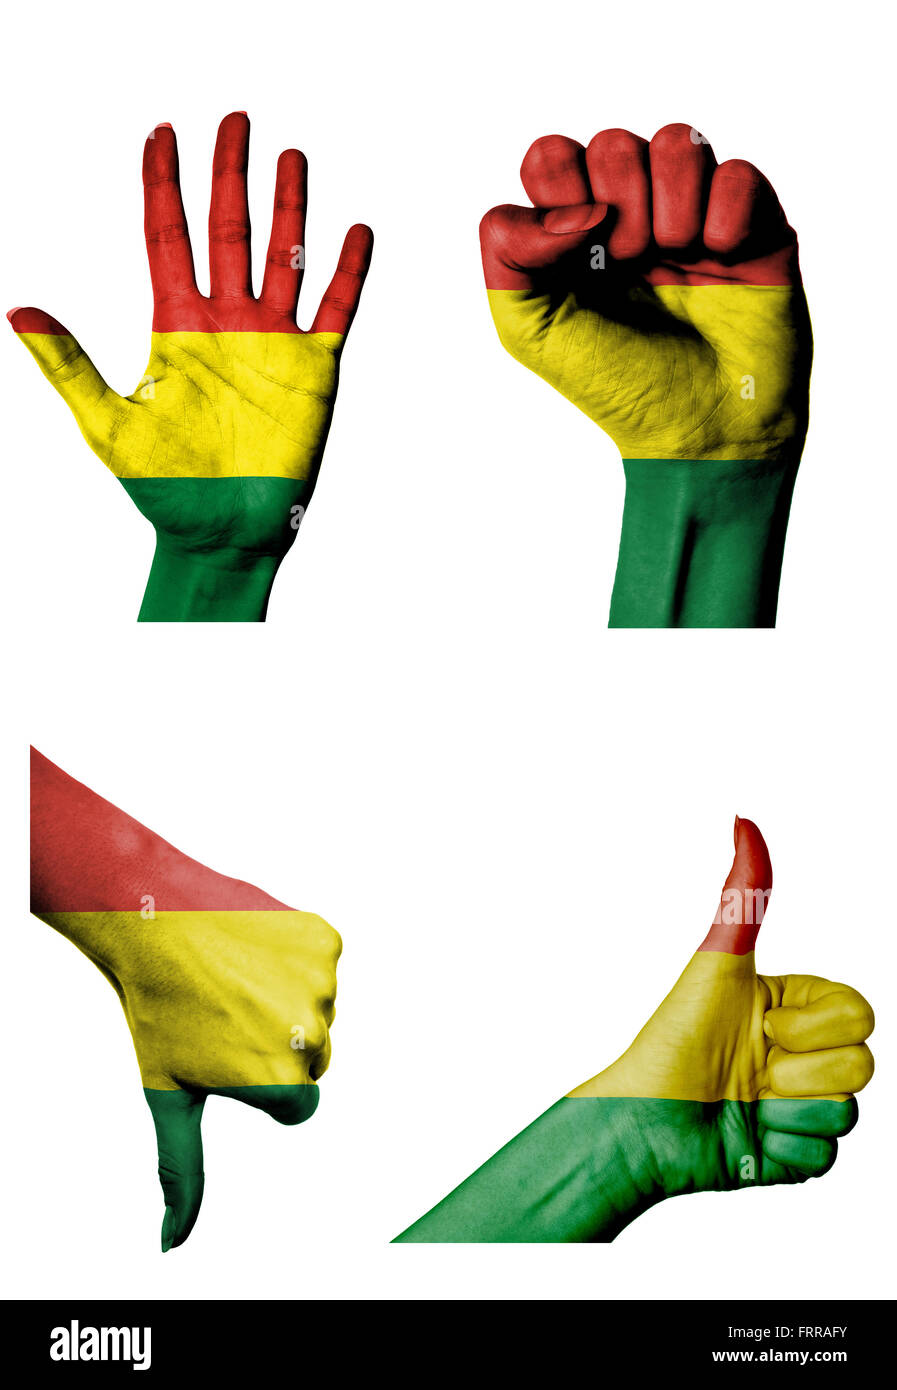 Les mains avec plusieurs gestes (poing fermé, paume ouverte, les pouces vers le haut et vers le bas) avec la Bolivie flag painted isolated on white Banque D'Images